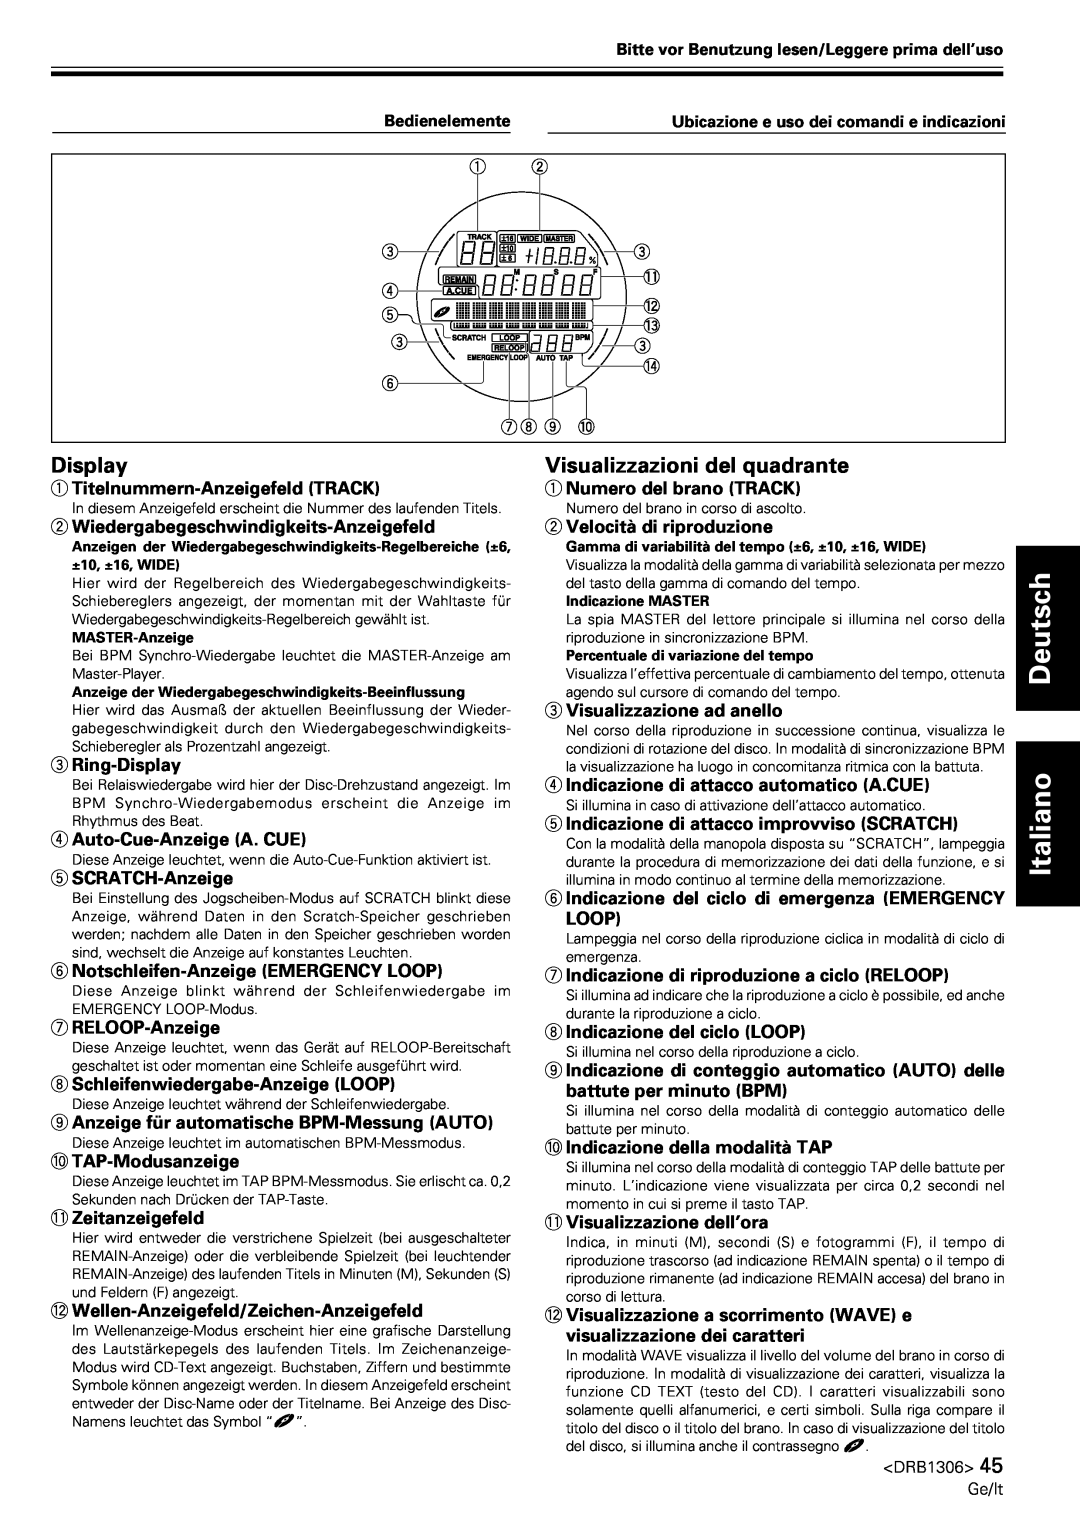 Pioneer CMX-3000 operating instructions Visualizzazioni del quadrante, Deutsch Italiano, Display 